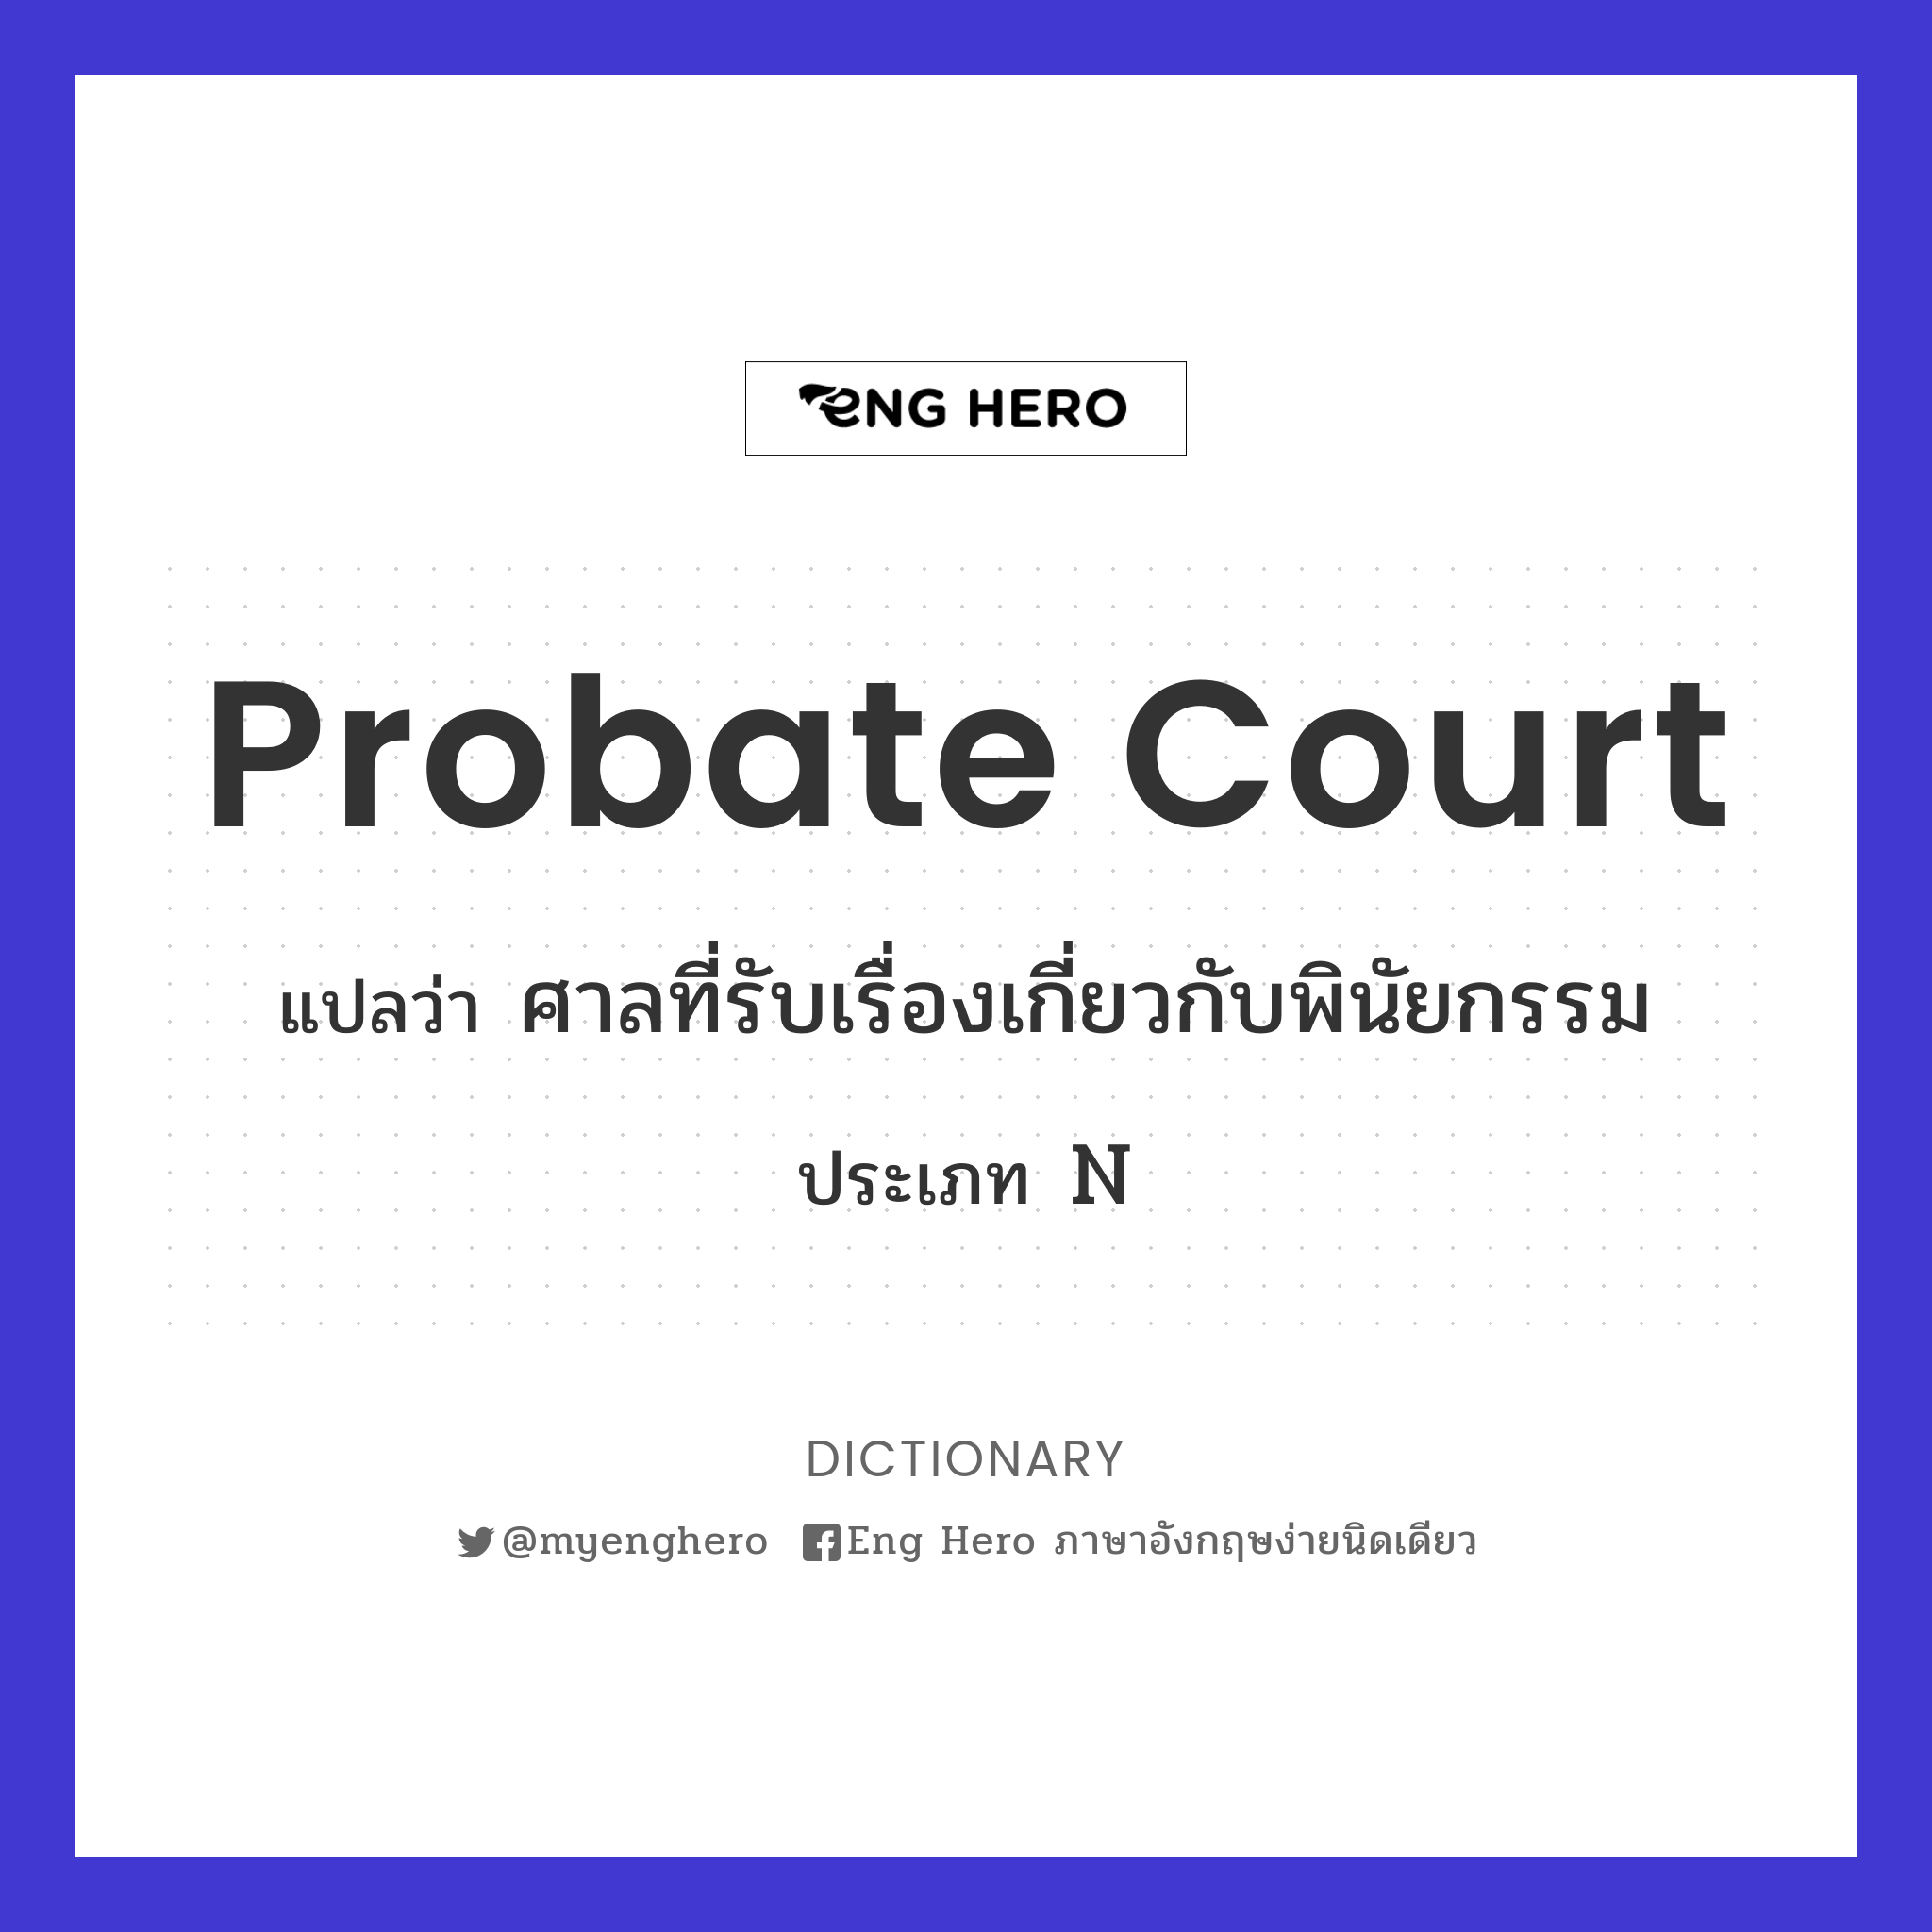 probate court